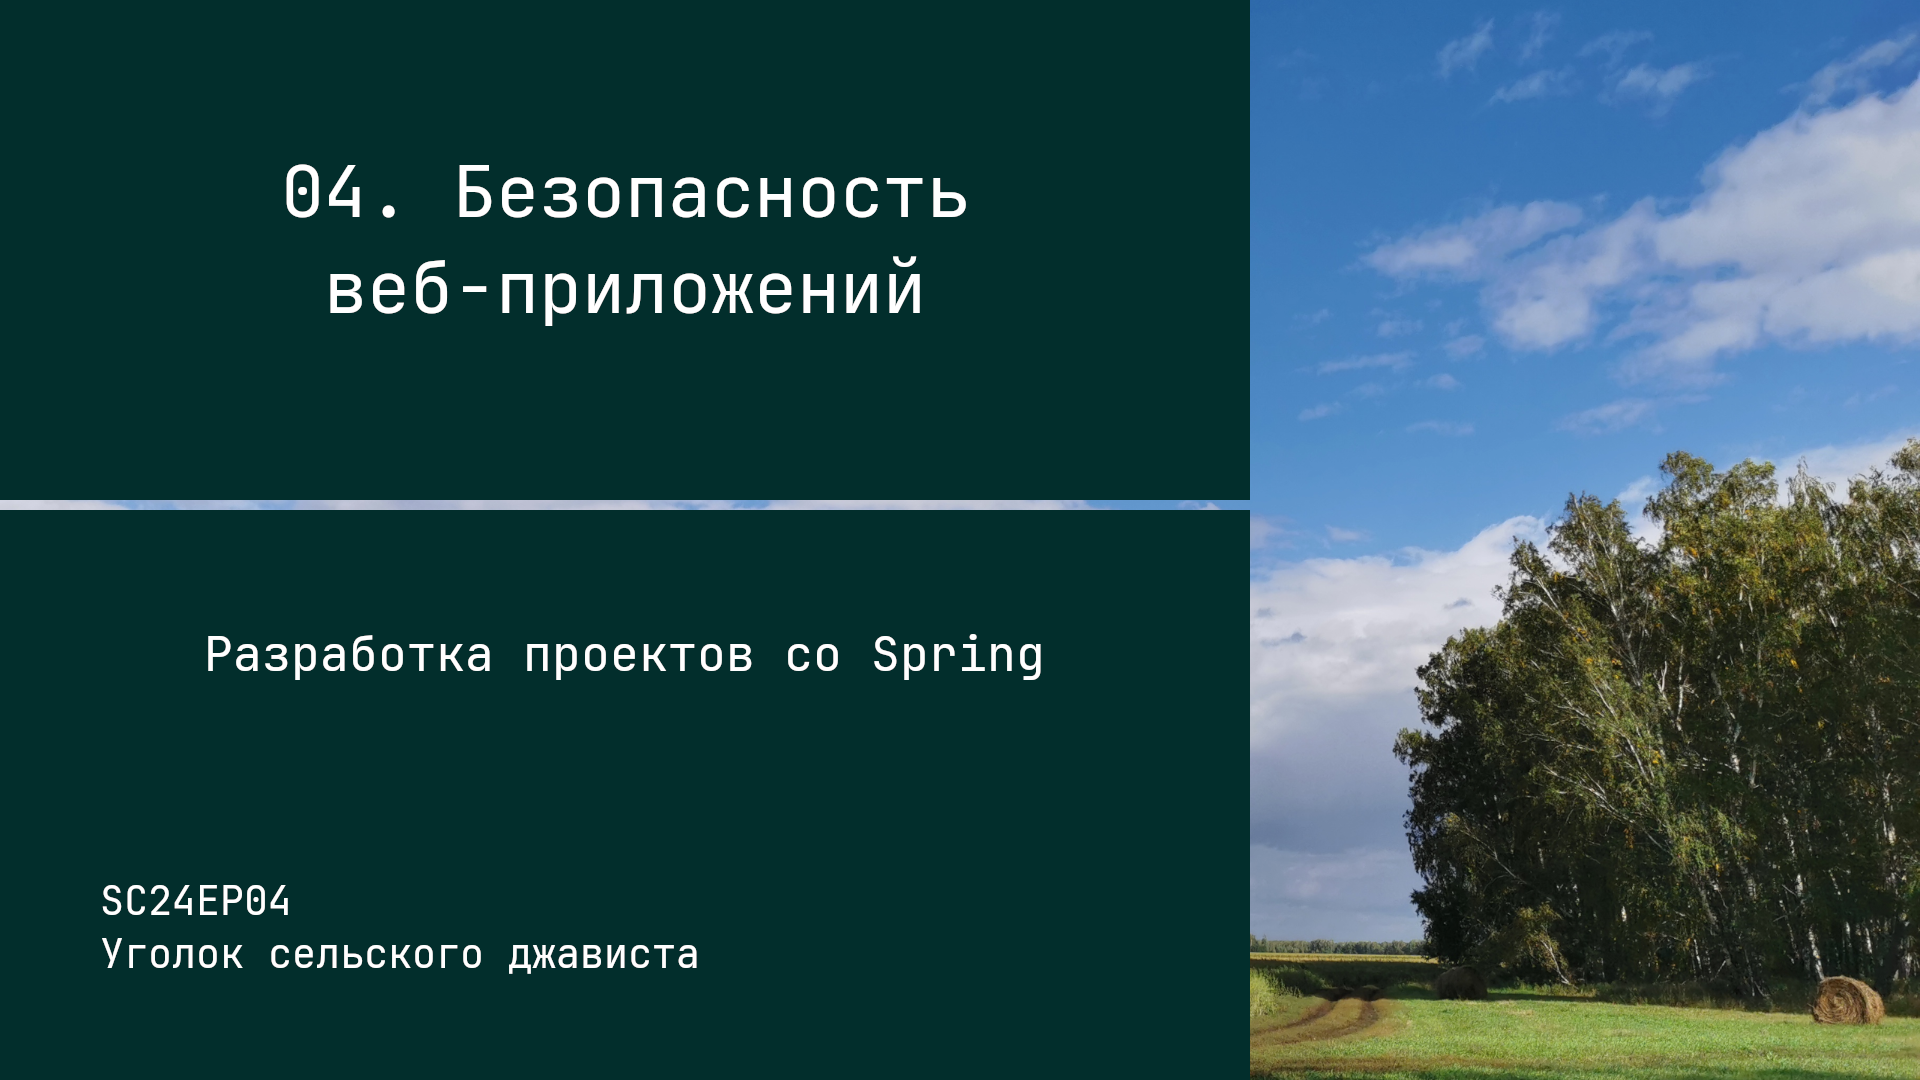 SC24EP04 Безопасность веб-приложений - Разработка проектов со Spring #java #spring #security